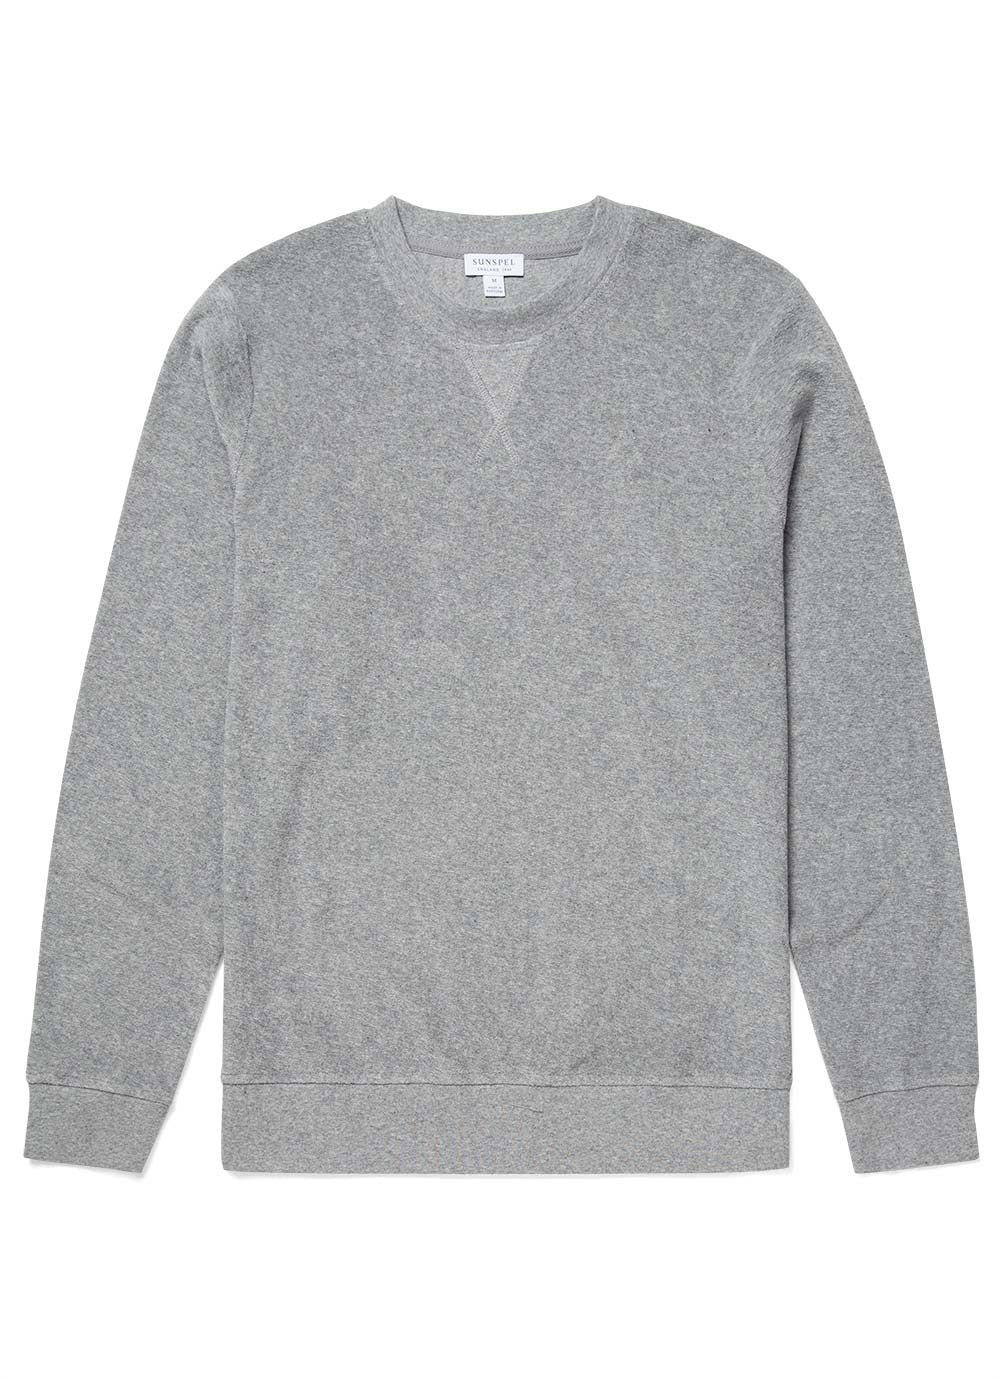 Towelling Sweatshirt Grey